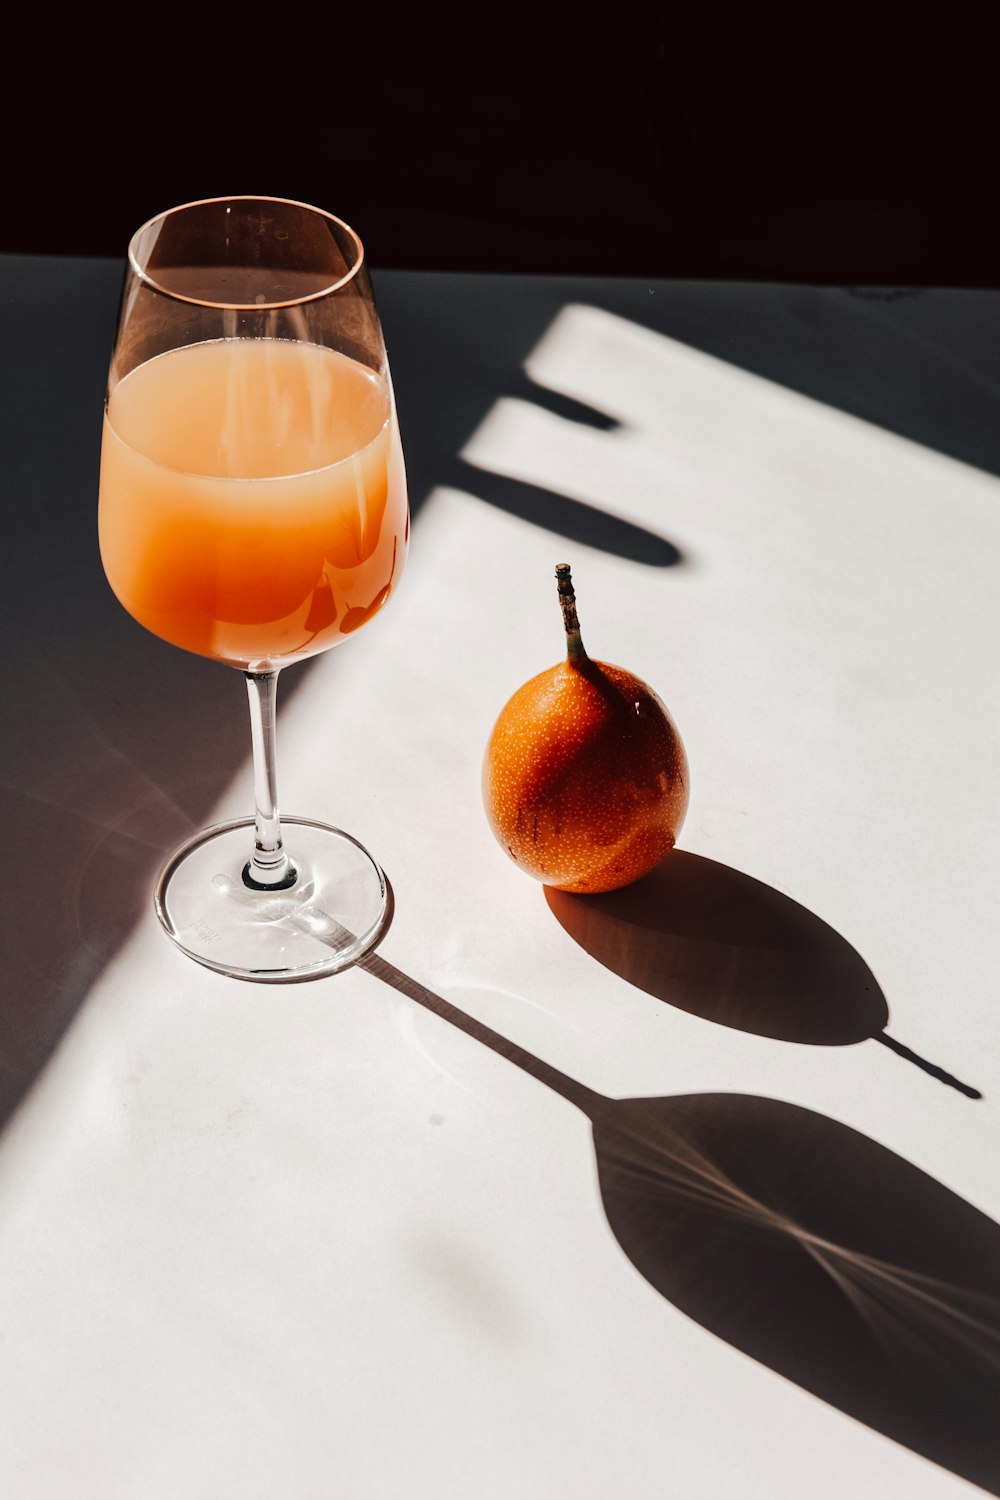 succo d'arancia in un bicchiere da vino trasparente accanto al cucchiaio d'argento